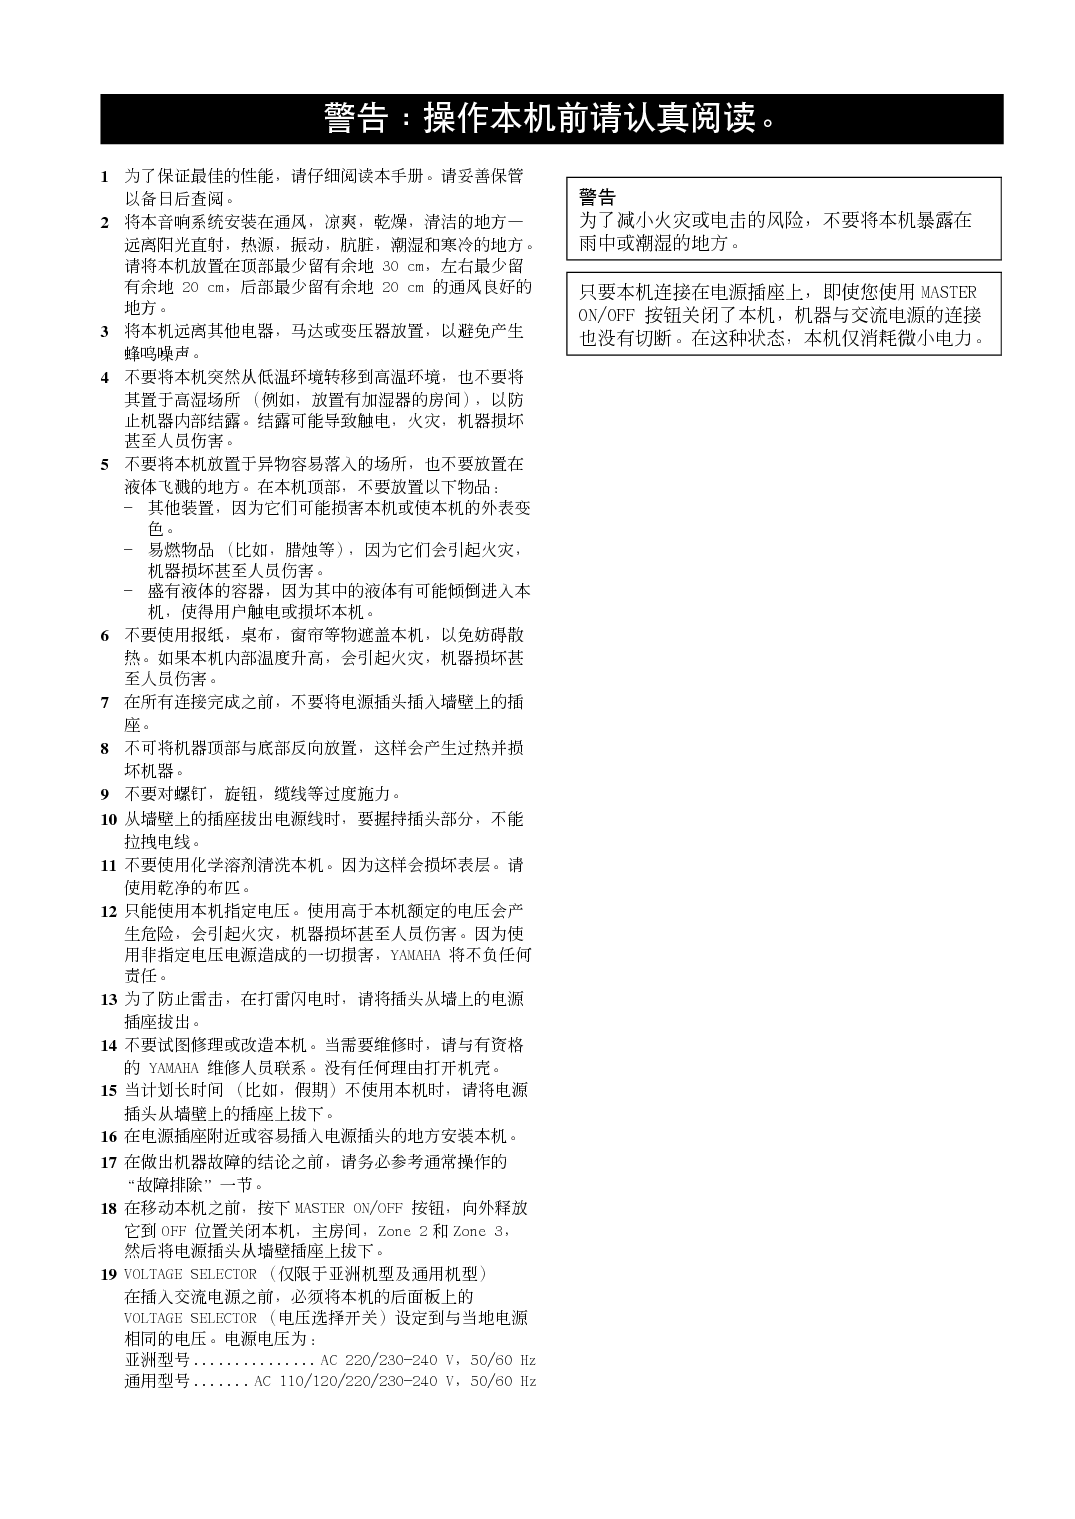 雅马哈 Yamaha RX-V2600 使用说明书 第1页